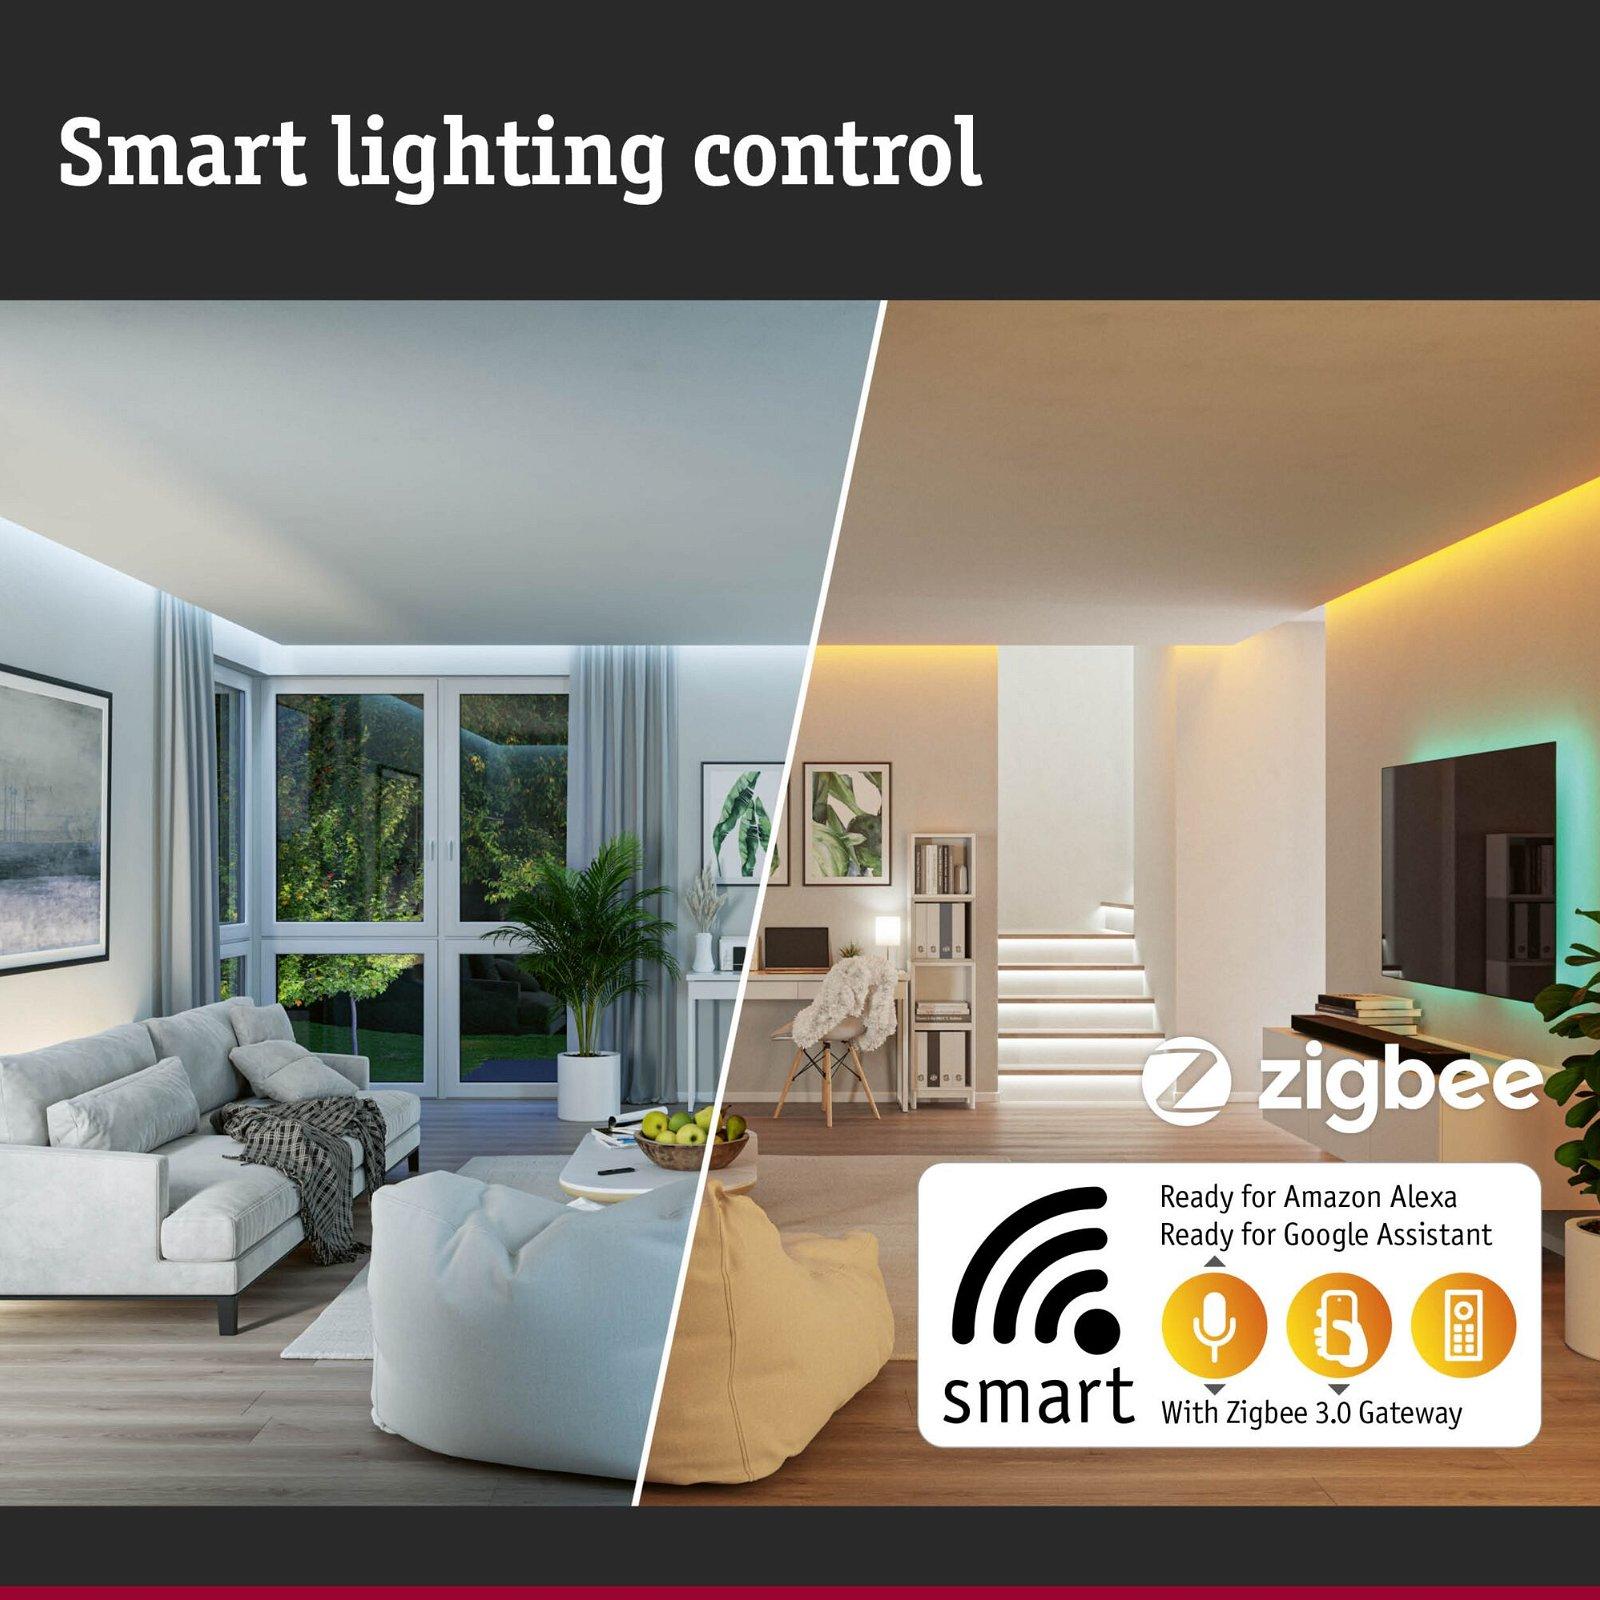 MaxLED 500 LED Strip Smart Home Zigbee měnitelná bílá s krytím základní sada 1,5m IP44 9W 60LEDs/m měnitelná bílá 20VA - PAULMANN